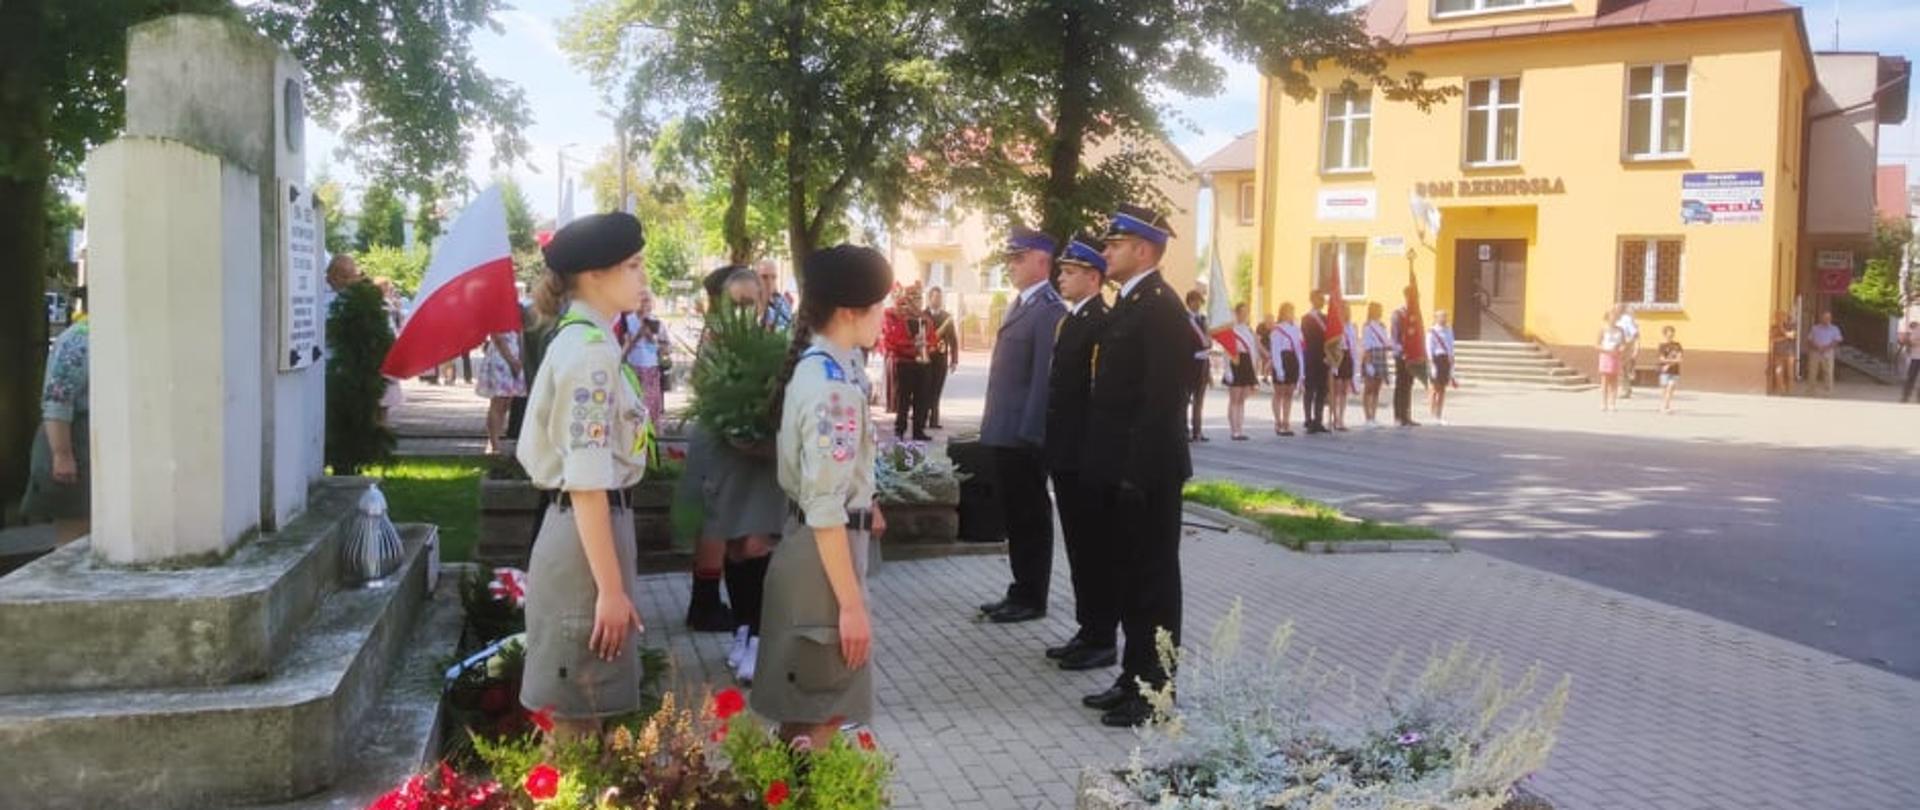 Strażacy razem z policjantem złożyli kwiaty pod pomnikiem podczas uroczystości święta wojska polskiego.